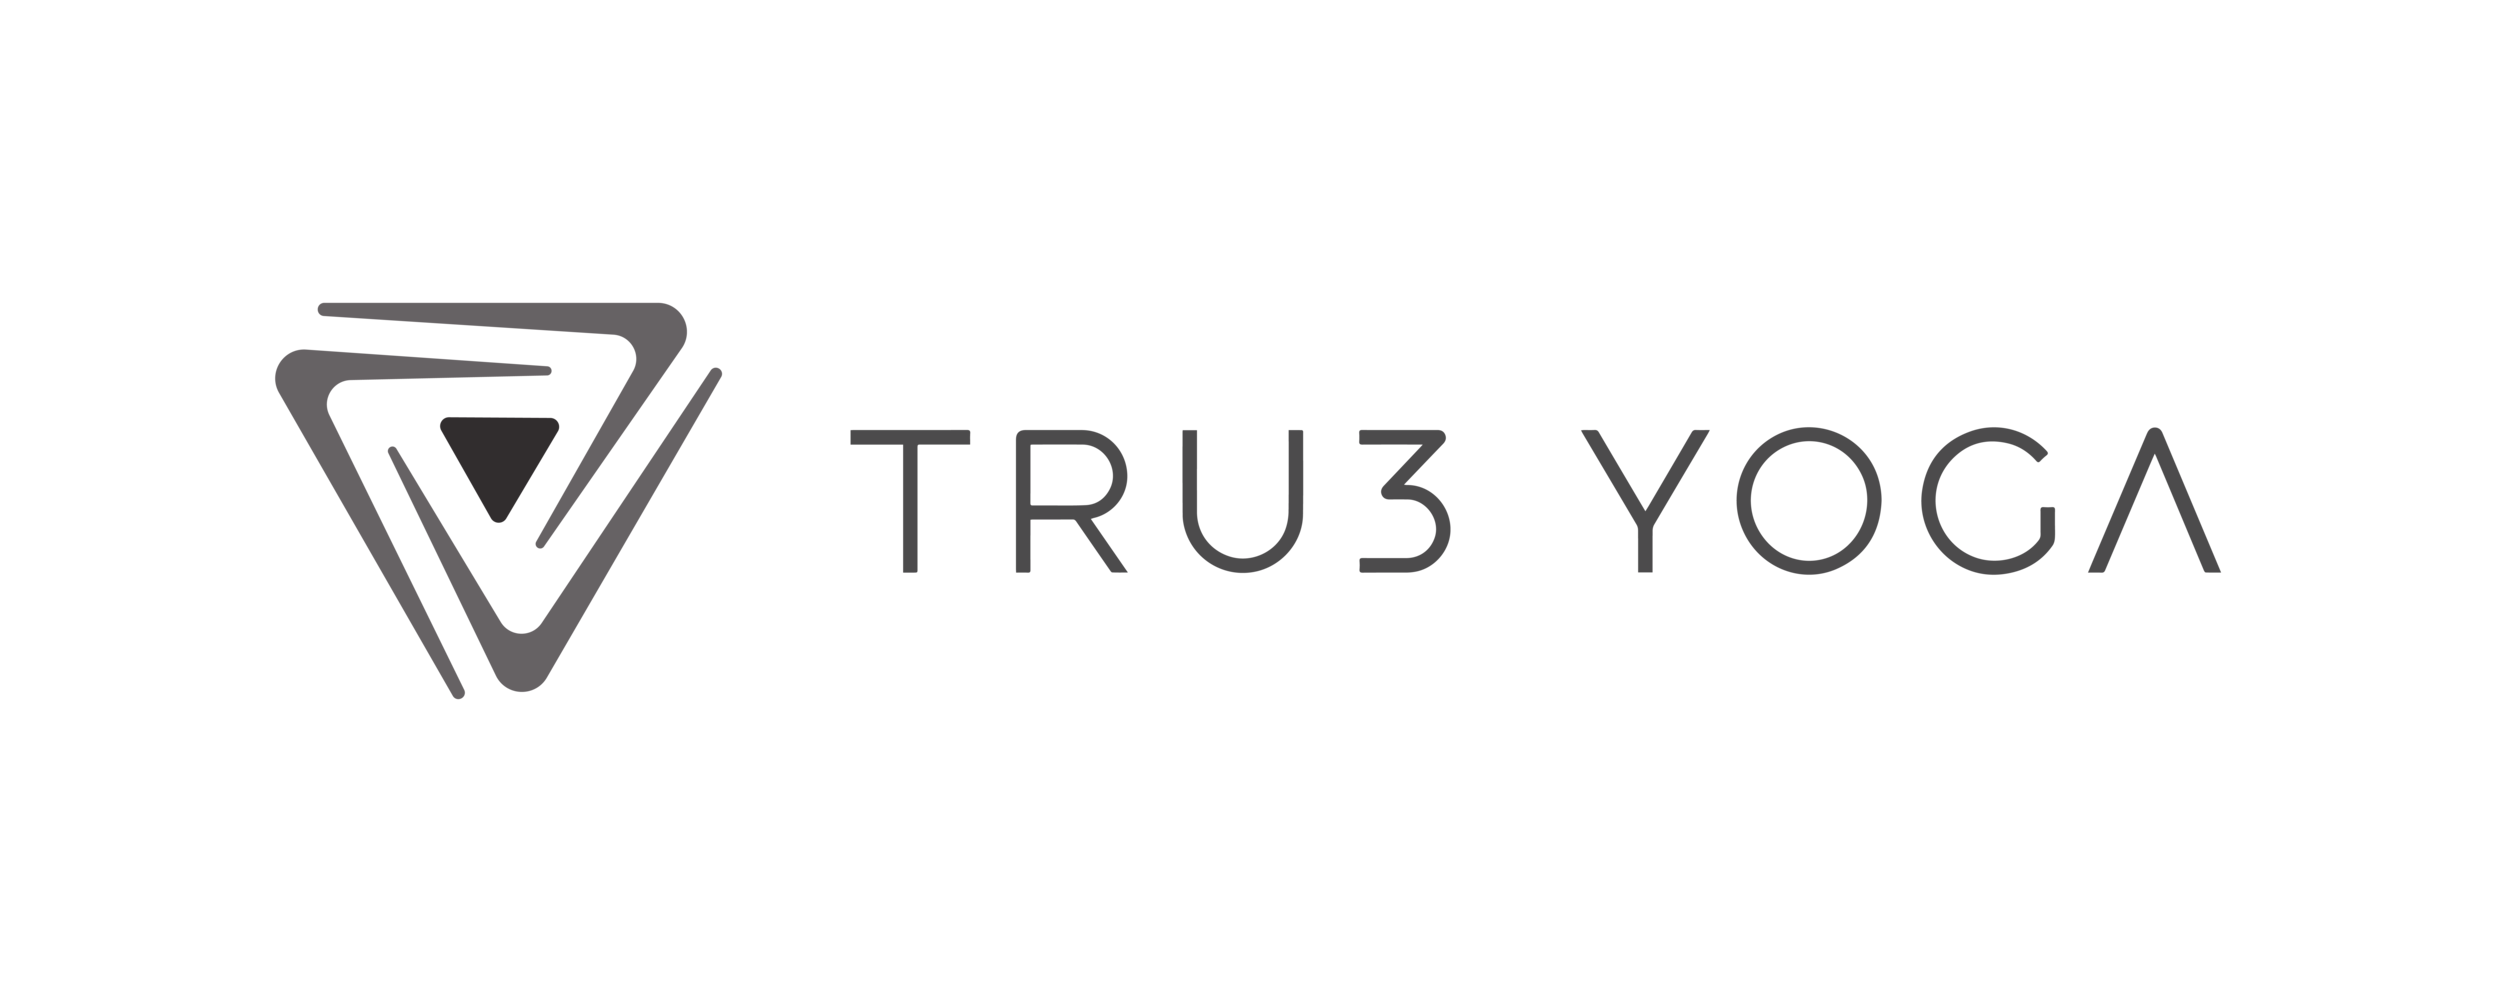 Tru3 Yoga Agency